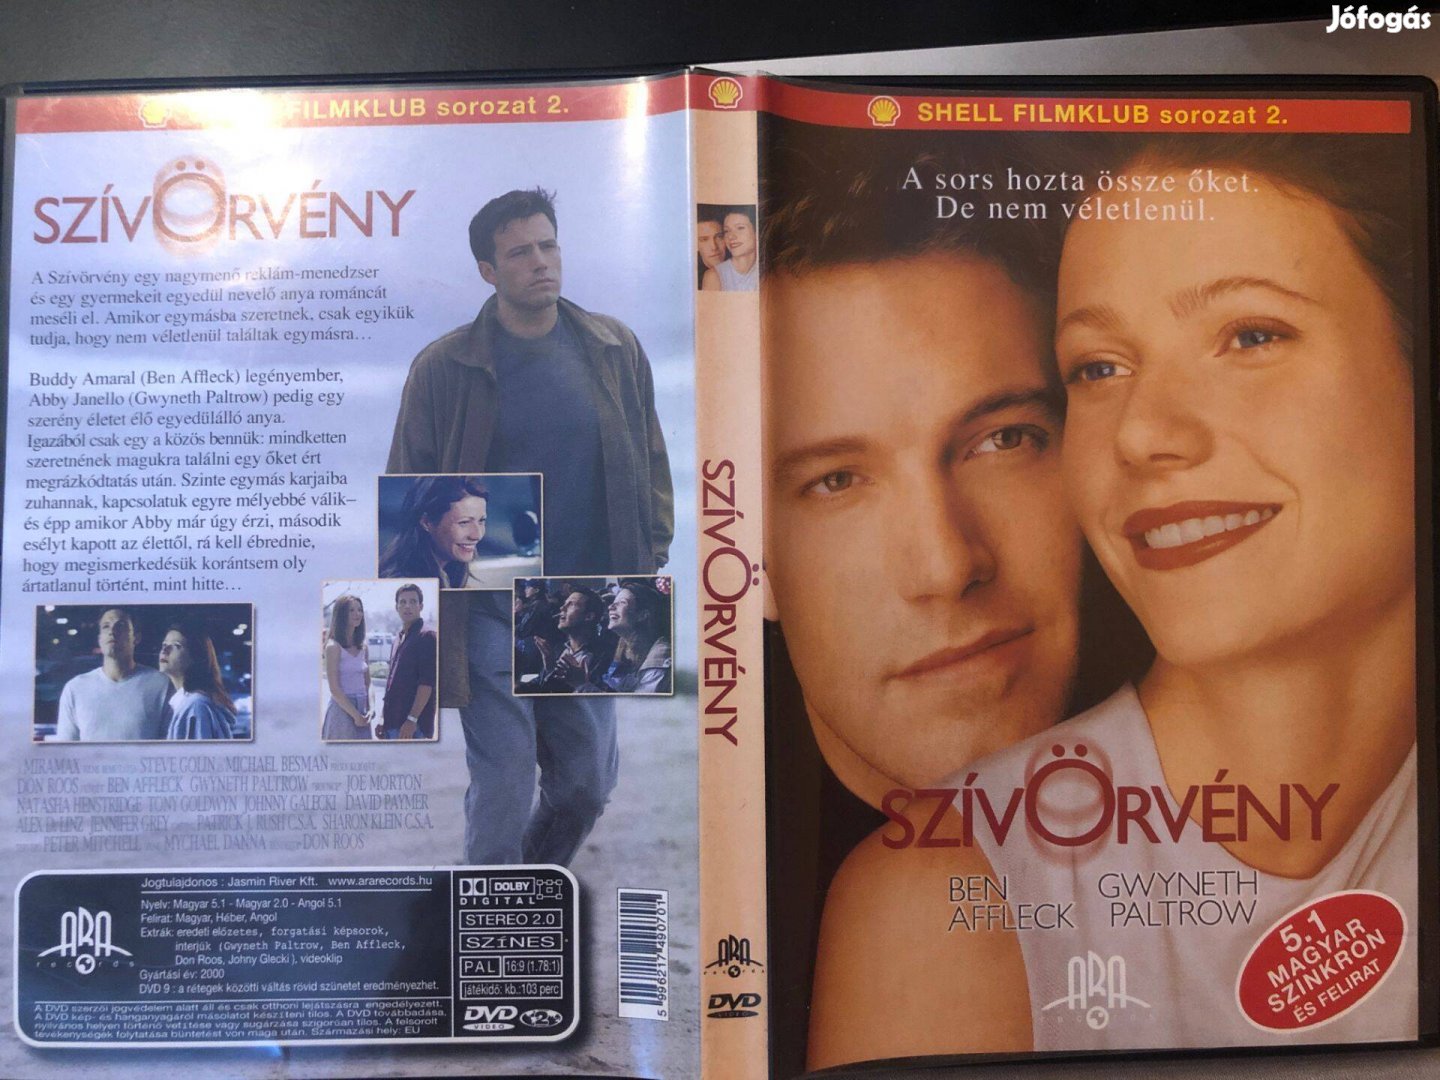 Szívörvény (karcmentes, Ben Affleck, Shell kiadás) DVD